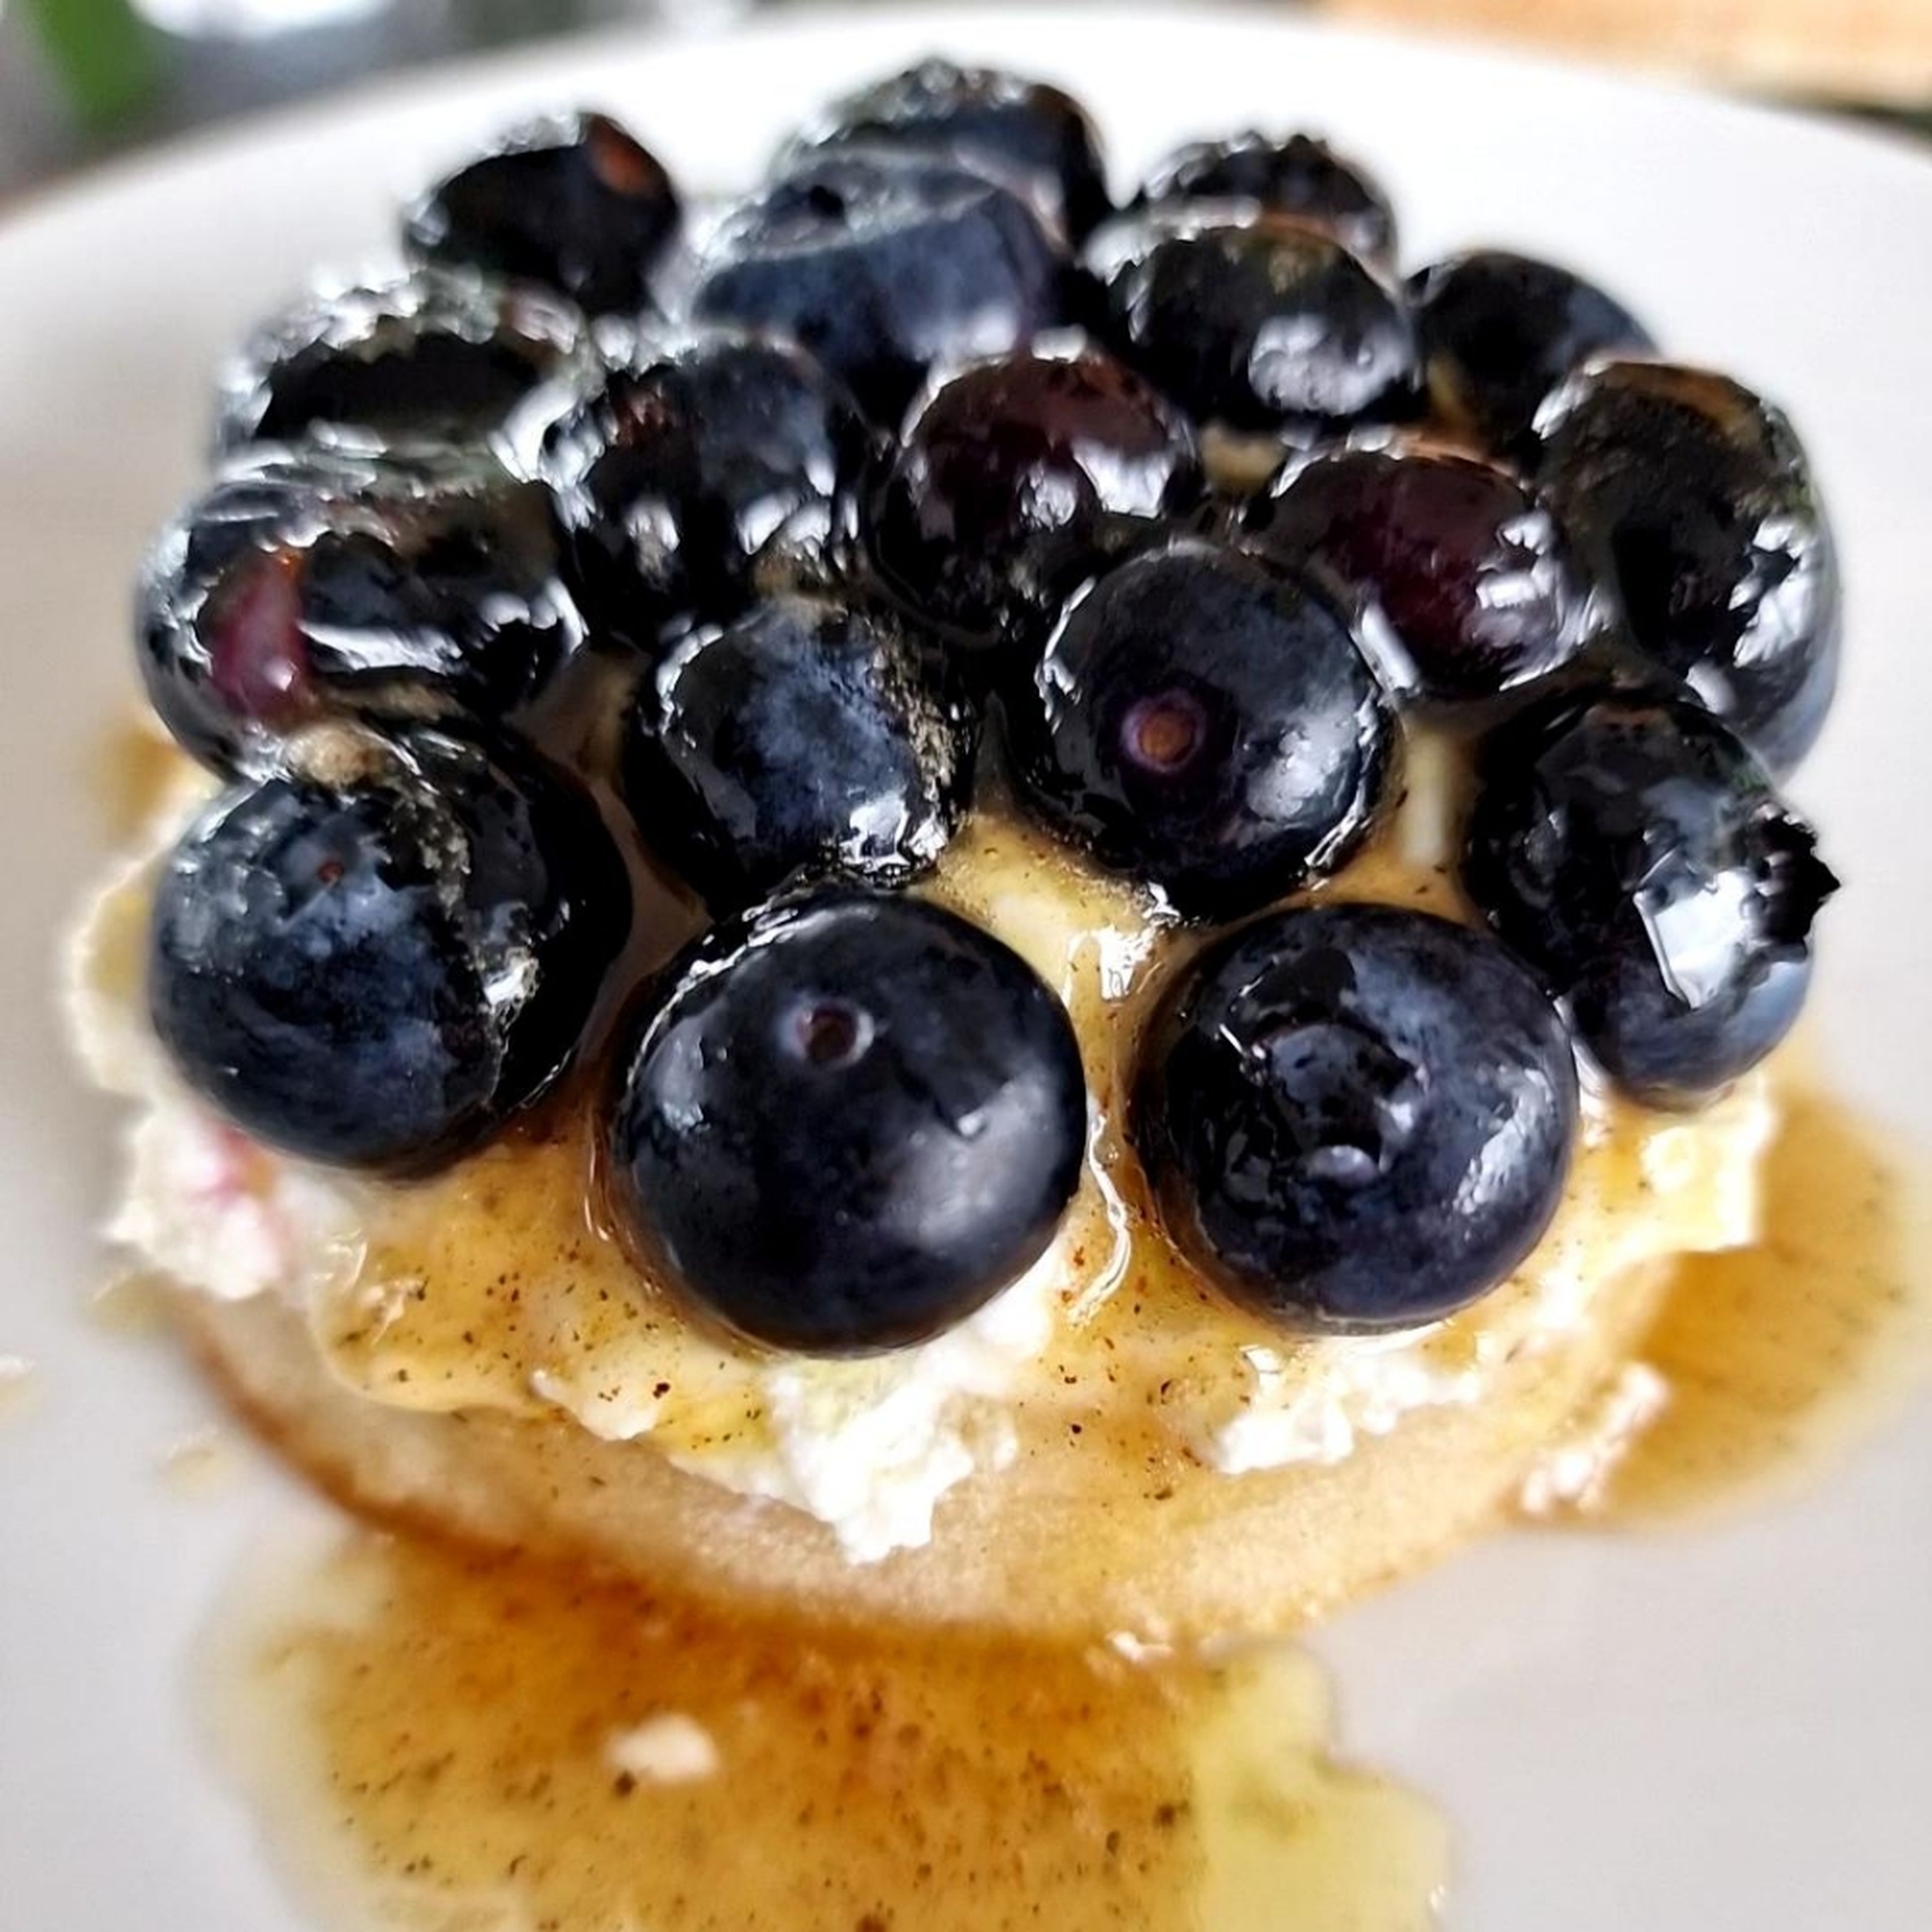 Breakfast blueberry crumpet